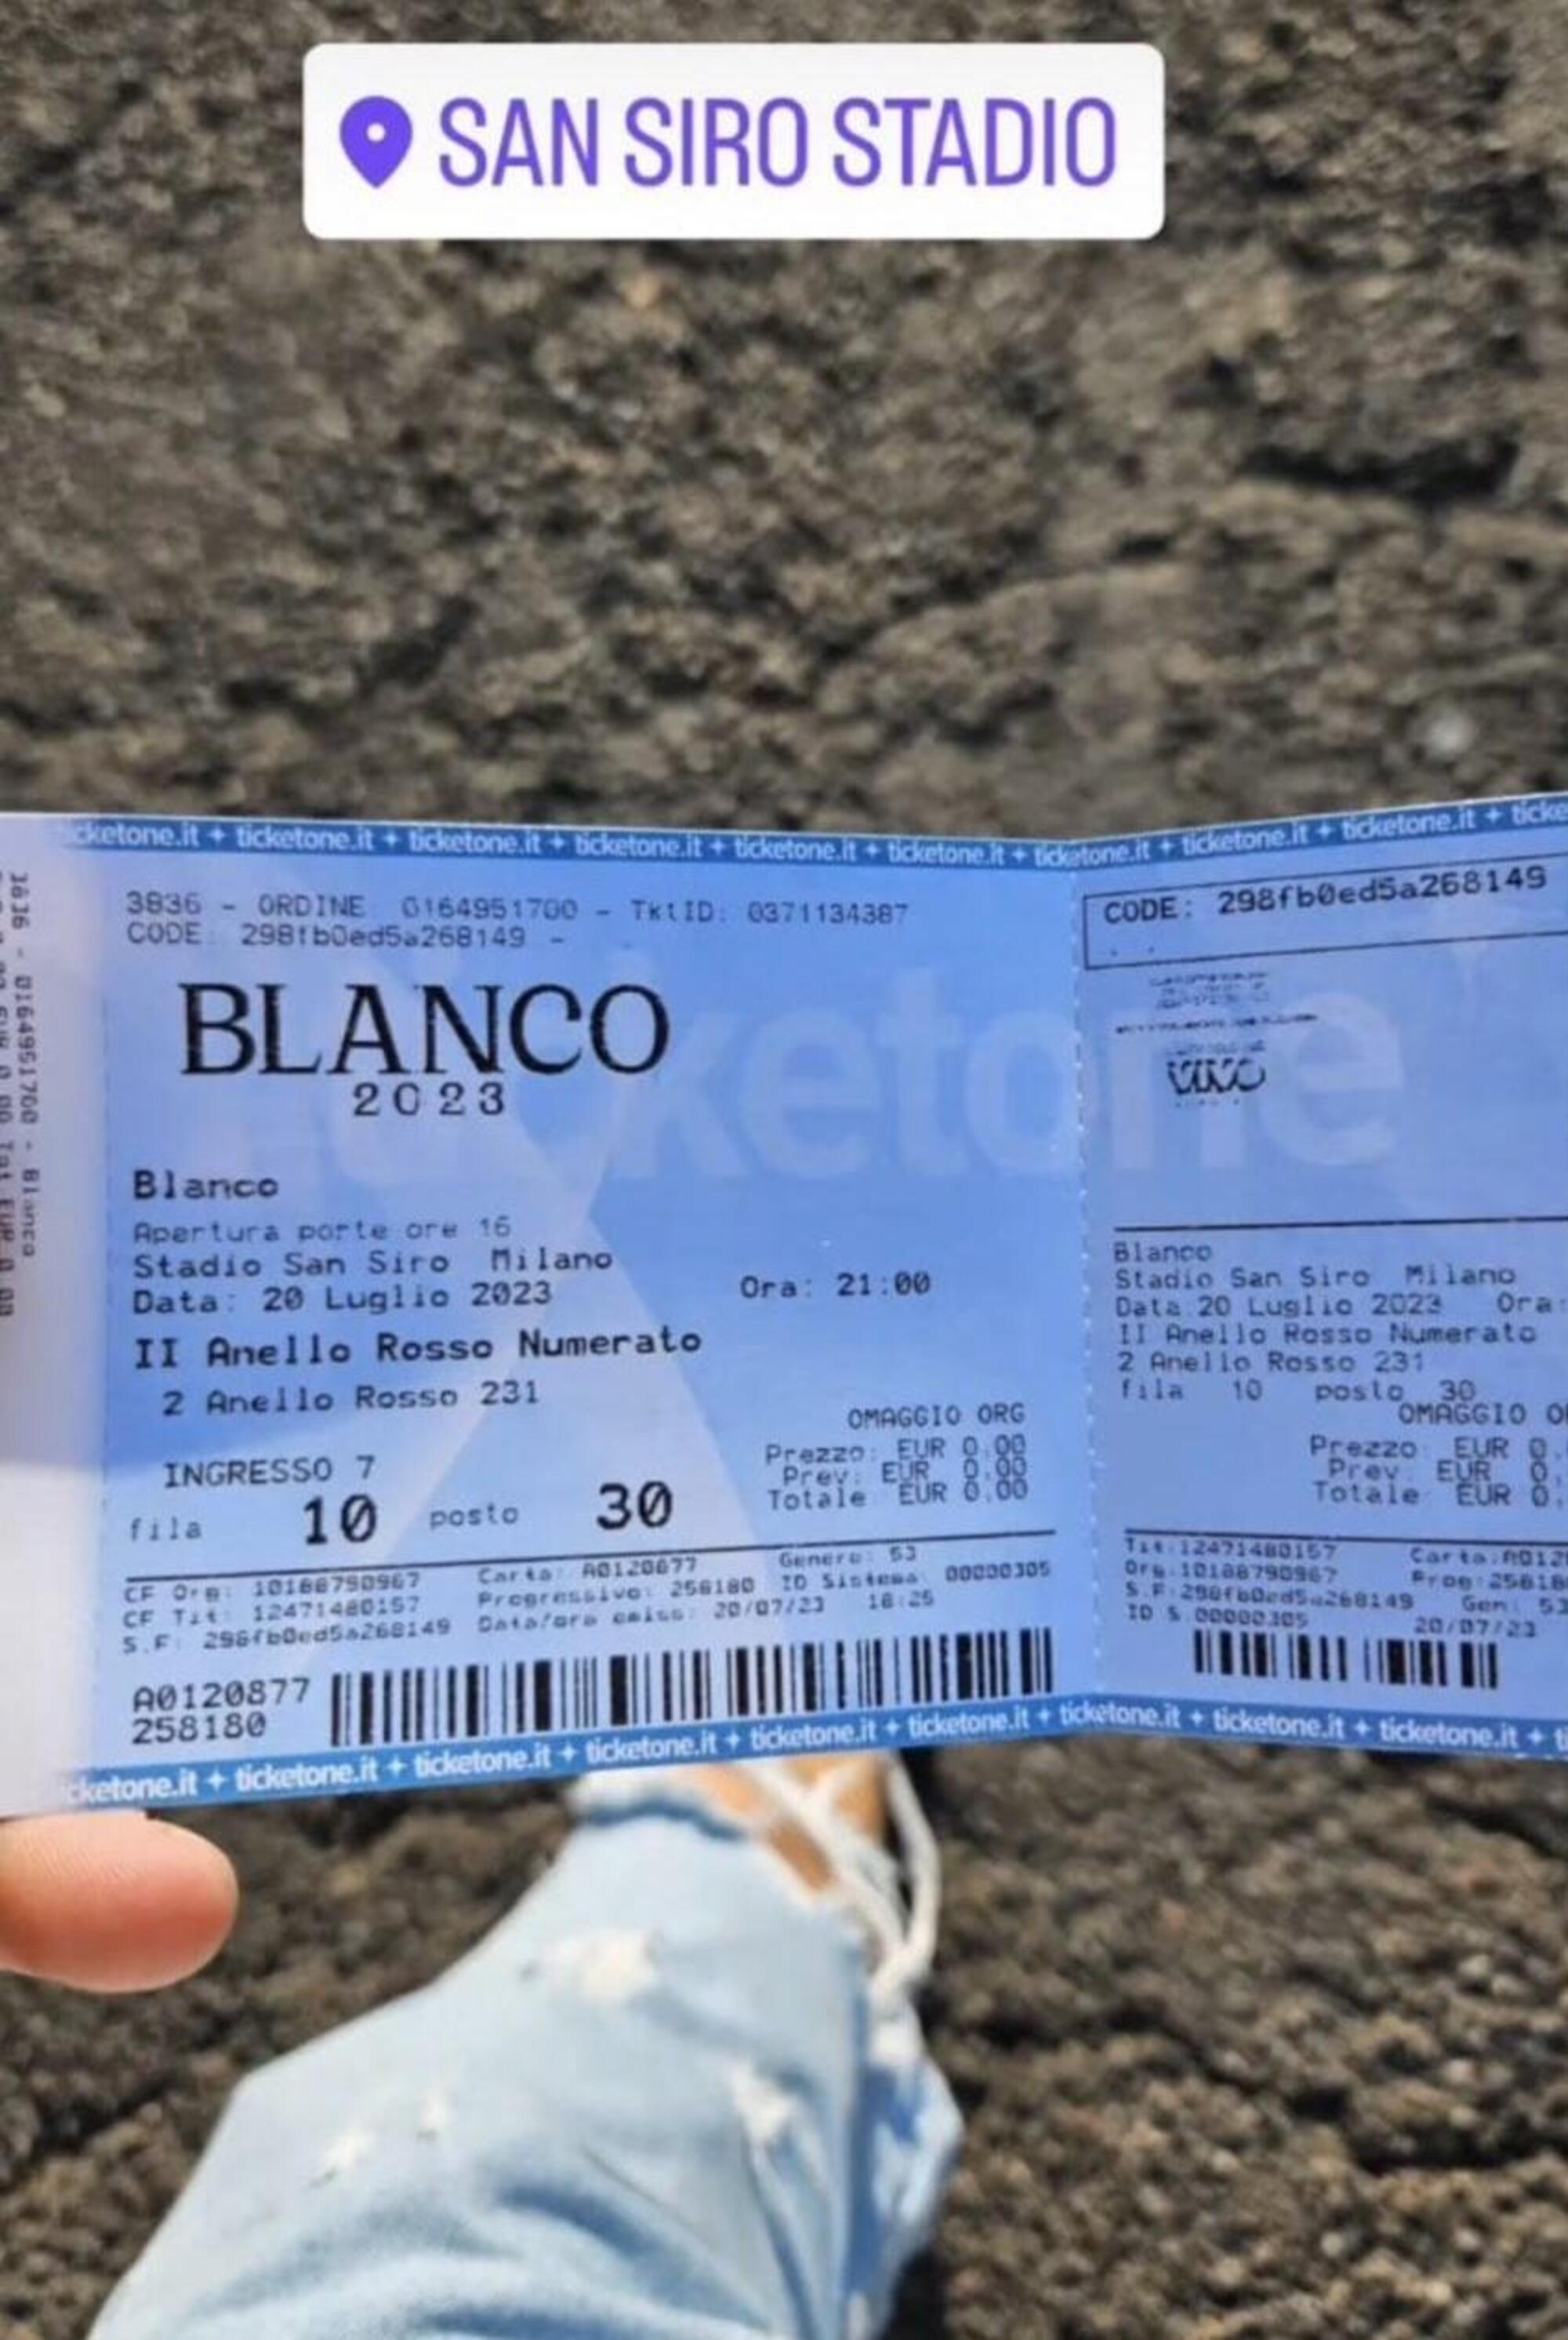 Sui social sono comparse foto di biglietti omaggio per il concerto di Blanco a San Siro